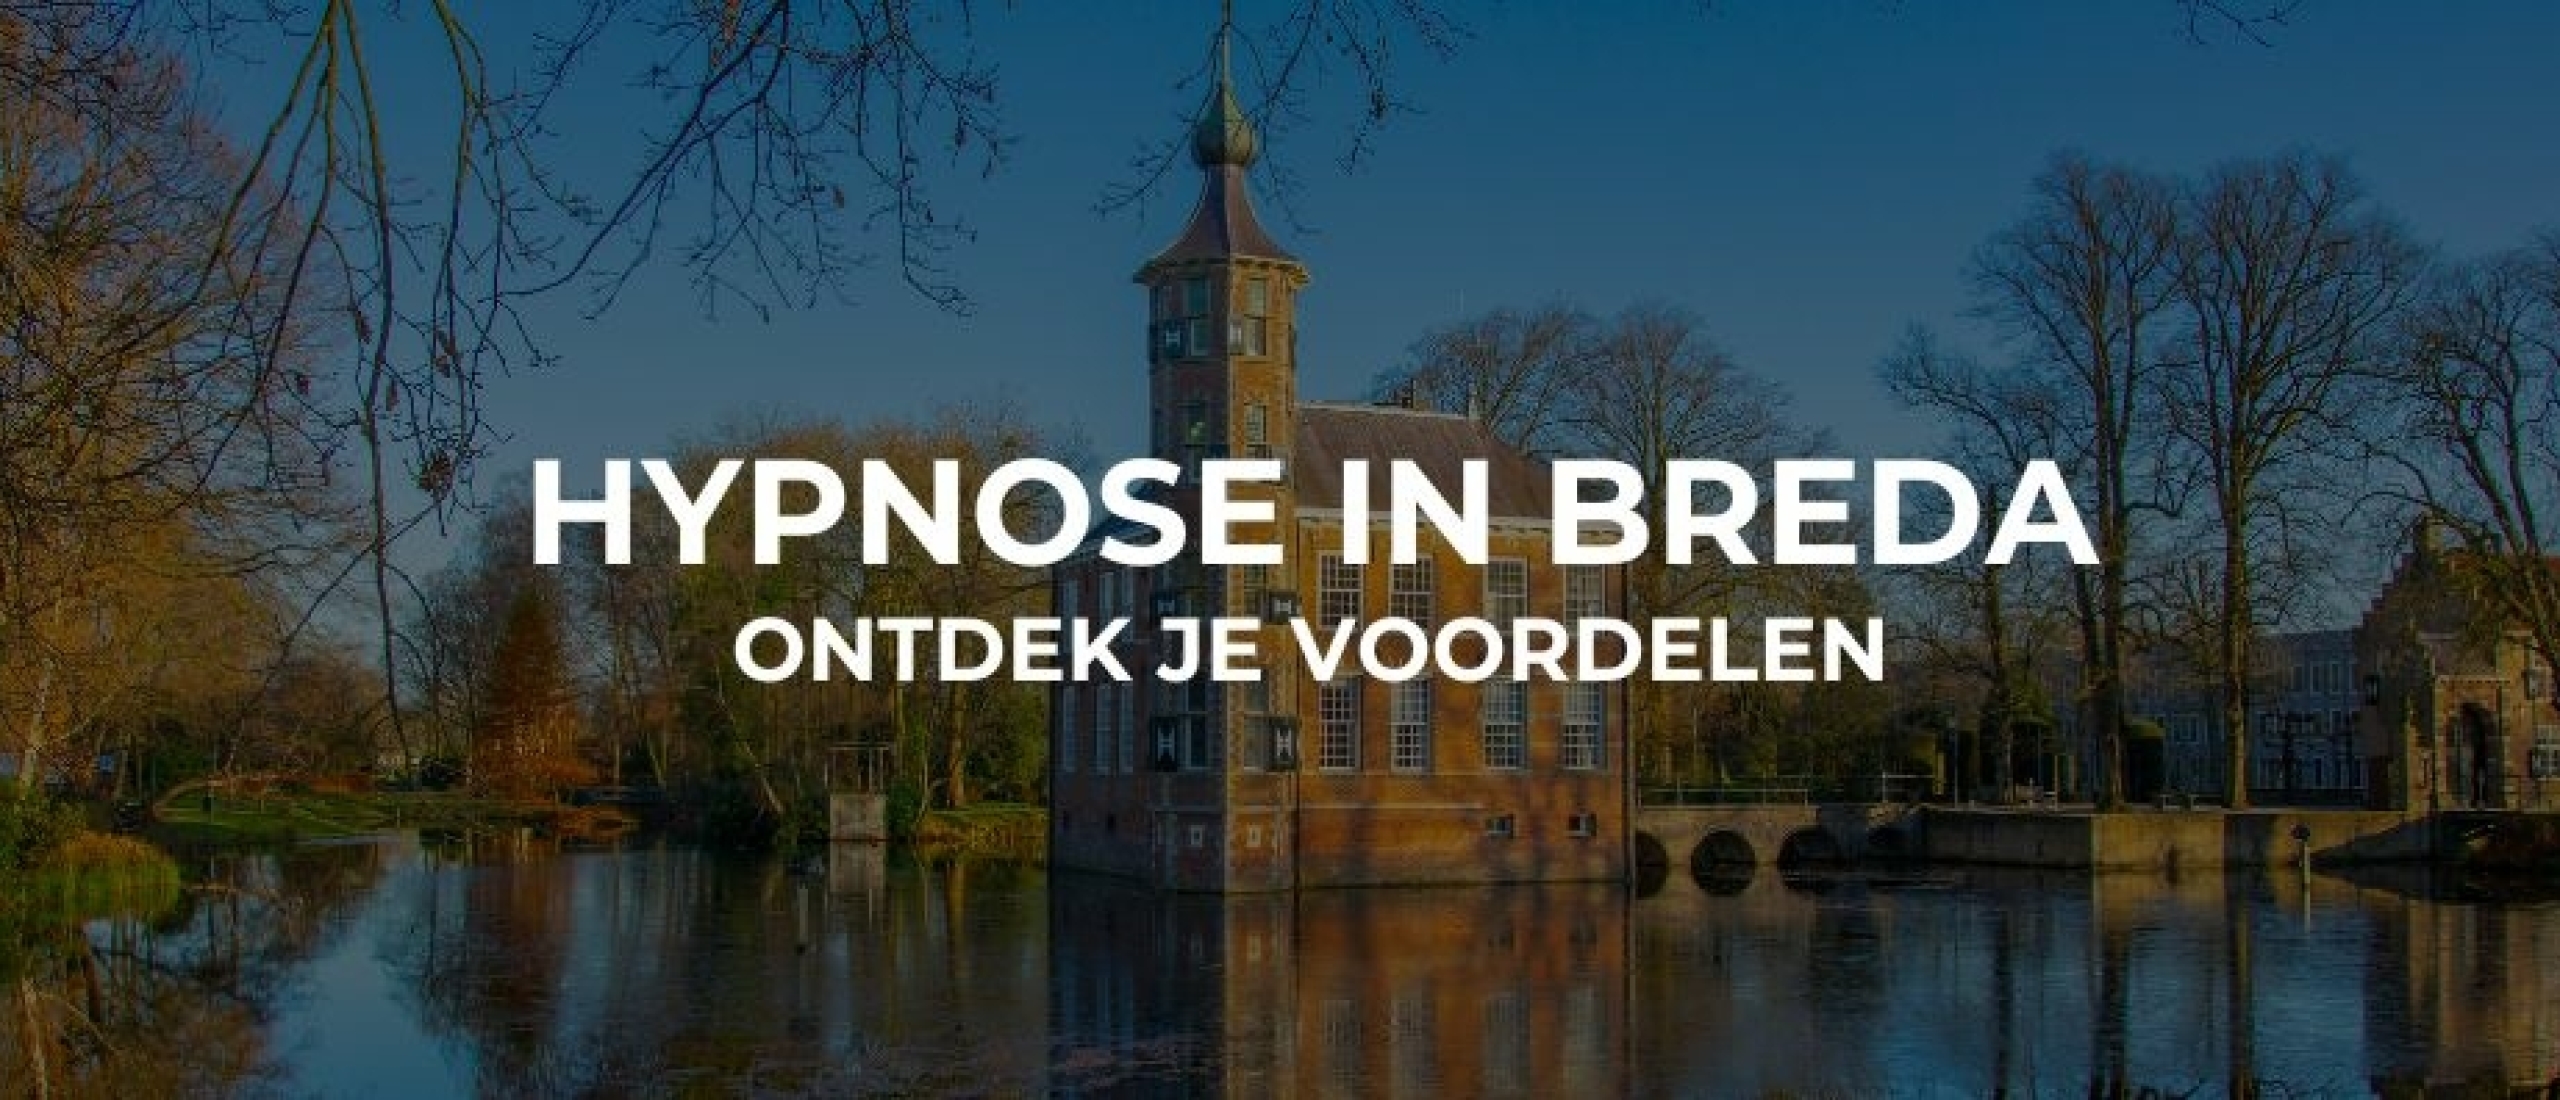 Hypnose in Breda: ontdek jouw voordelen - Hypnose Breda